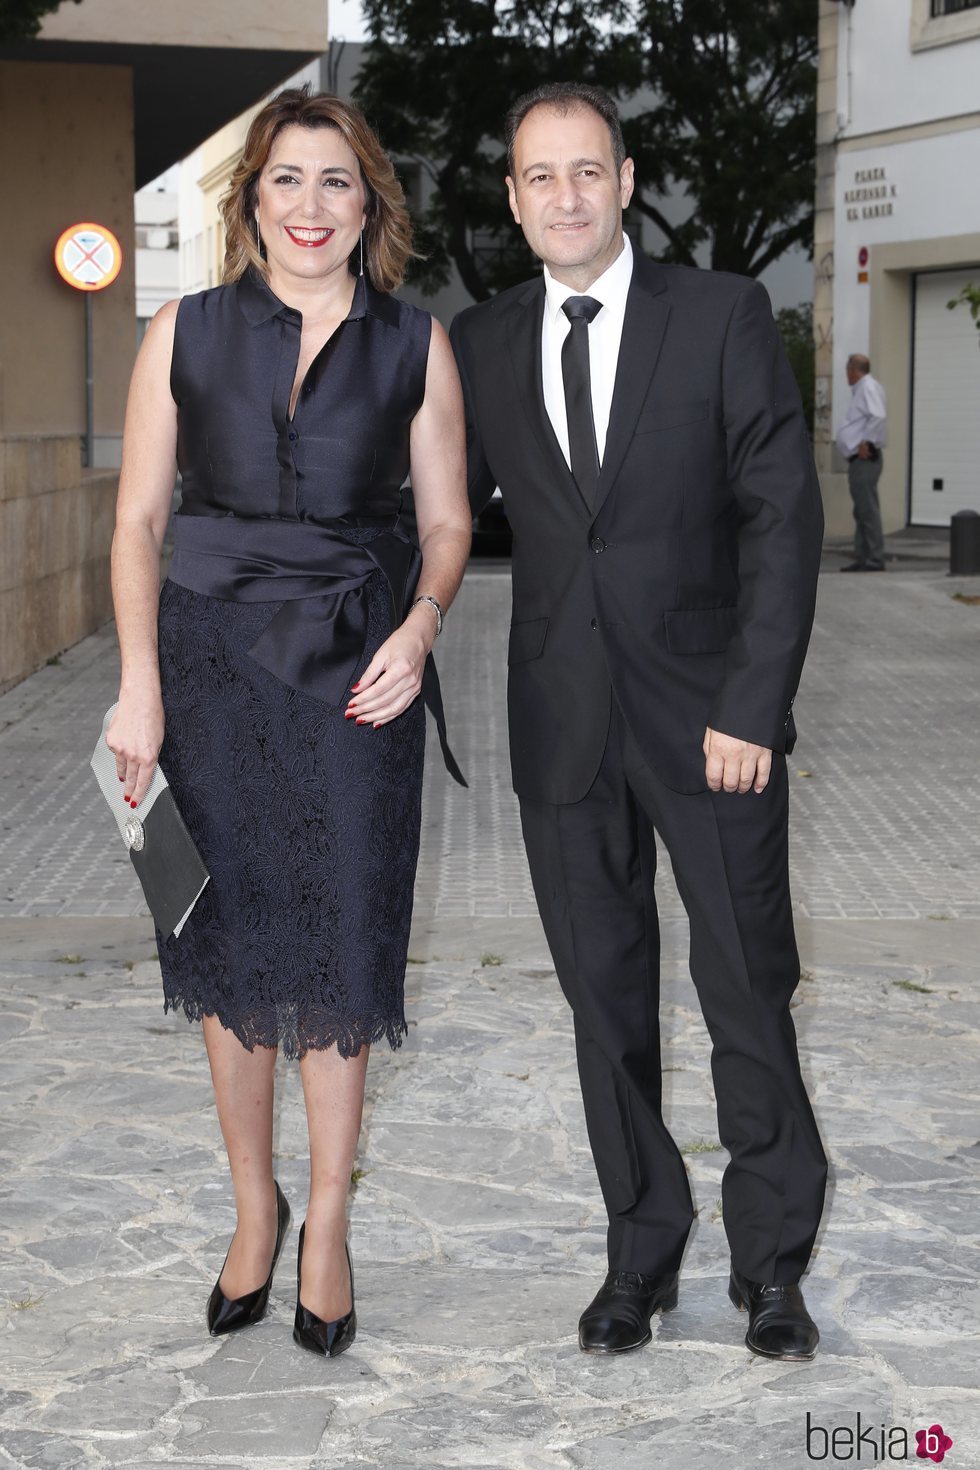 Susana Díaz y José María Moriche en la boda de Ainhoa Arteta y Matías Urrea